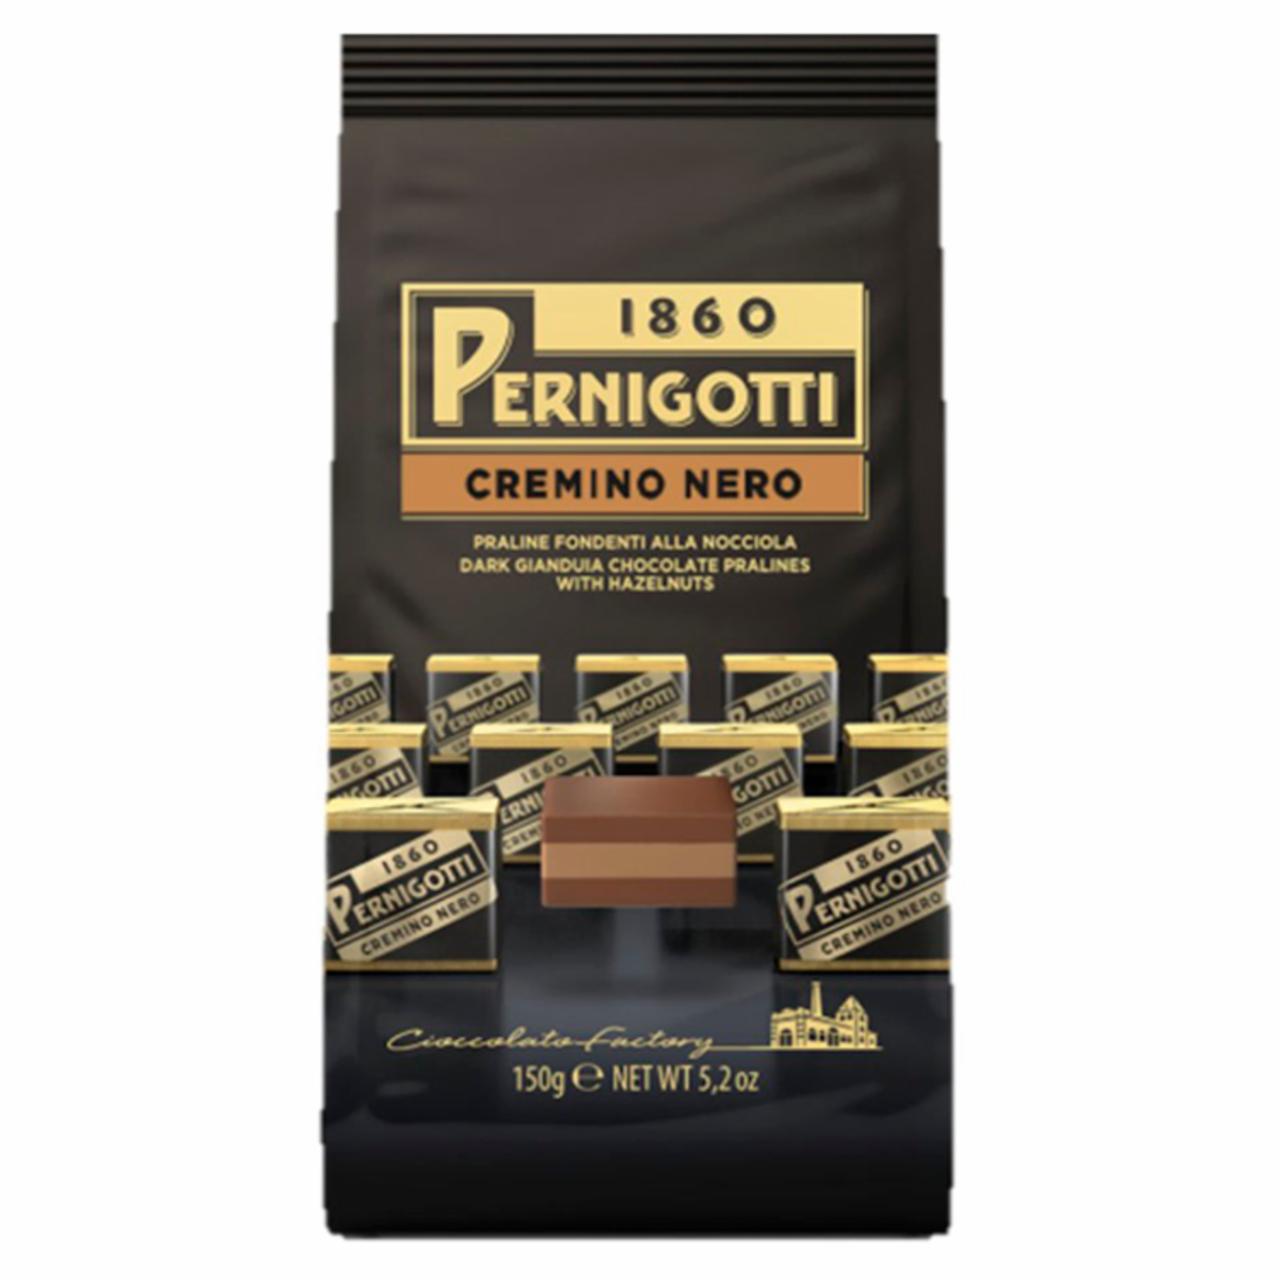 Képek - Pernigotti Cremino Nero mogyorós gianduja csokoládé praliné mogyorókrémmel töltve 150 g